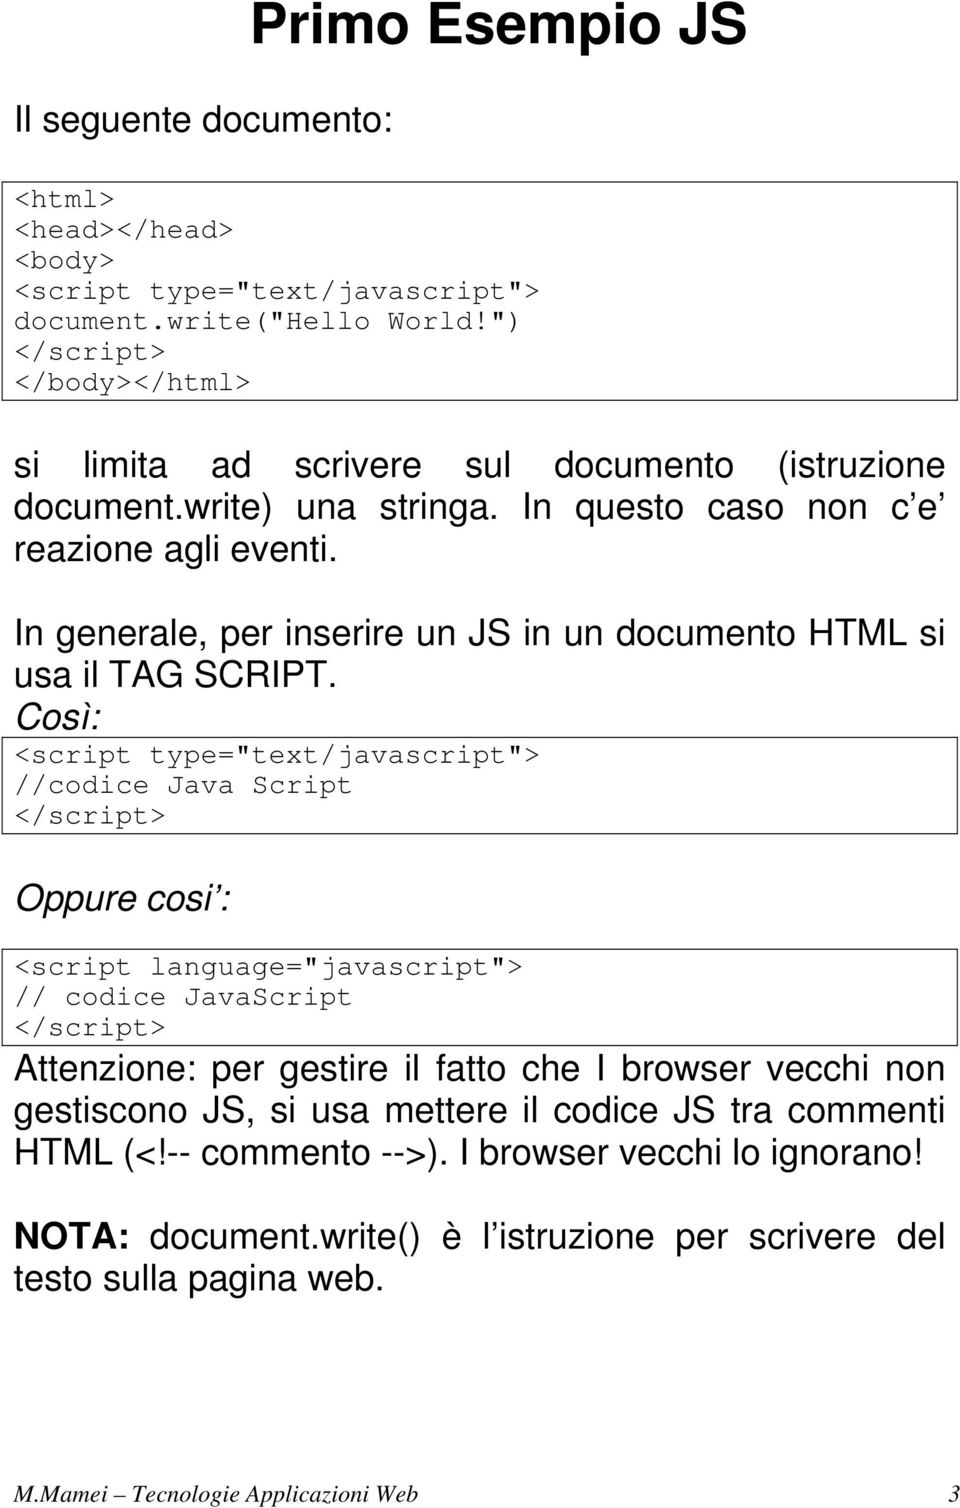 In generale, per inserire un JS in un documento HTML si usa il TAG SCRIPT.